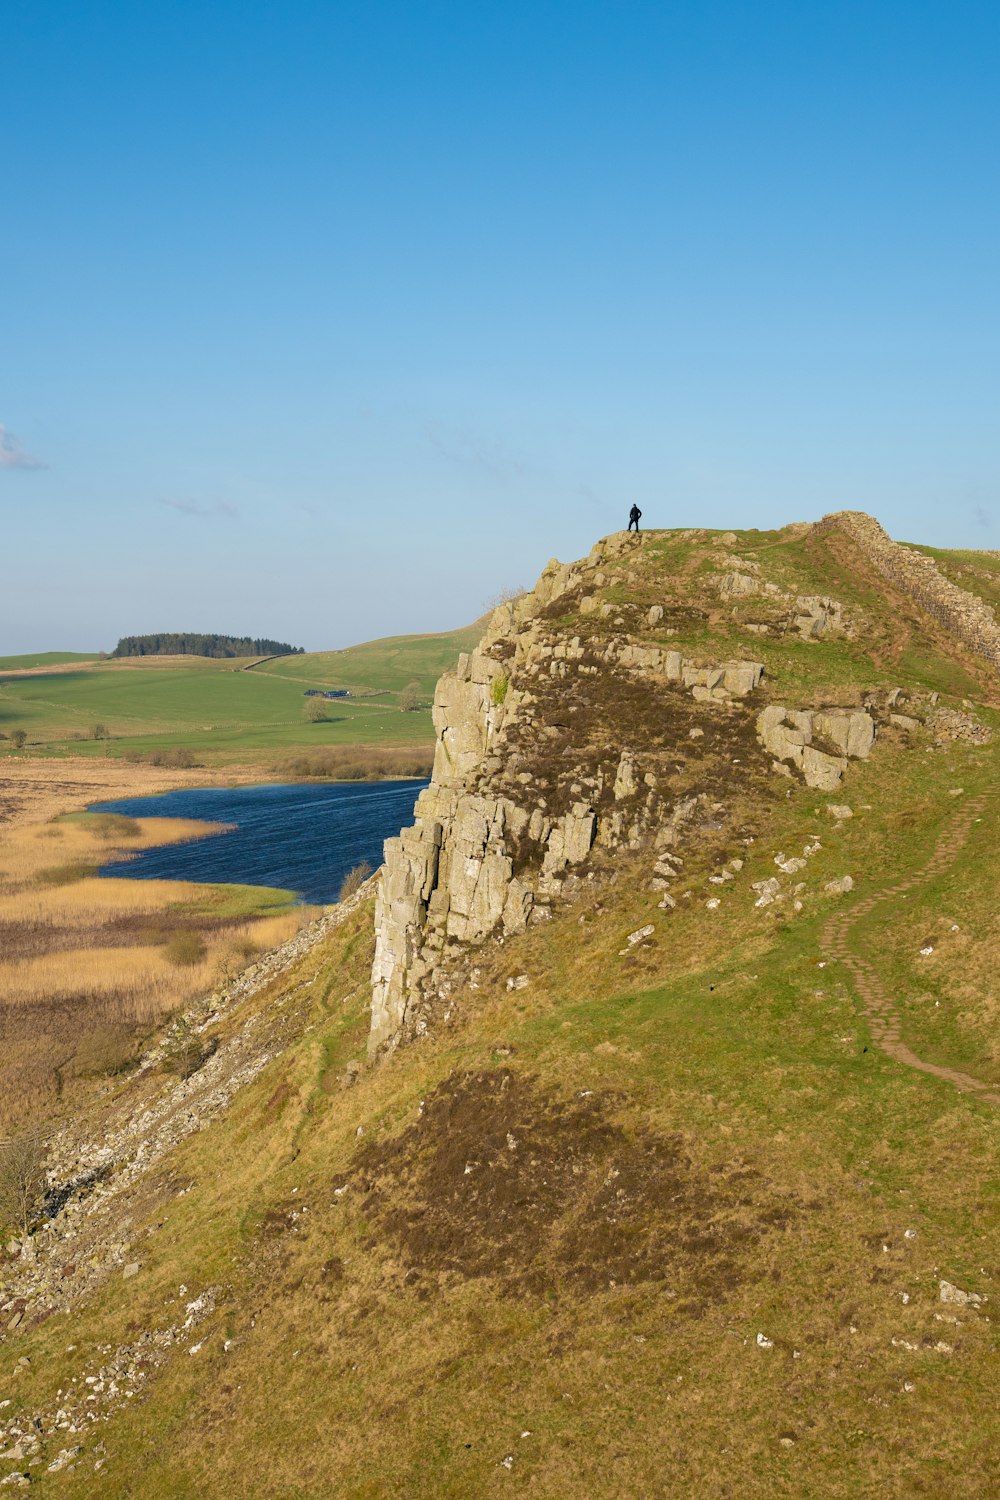 Una persona in piedi sulla cima di una collina vicino a un lago